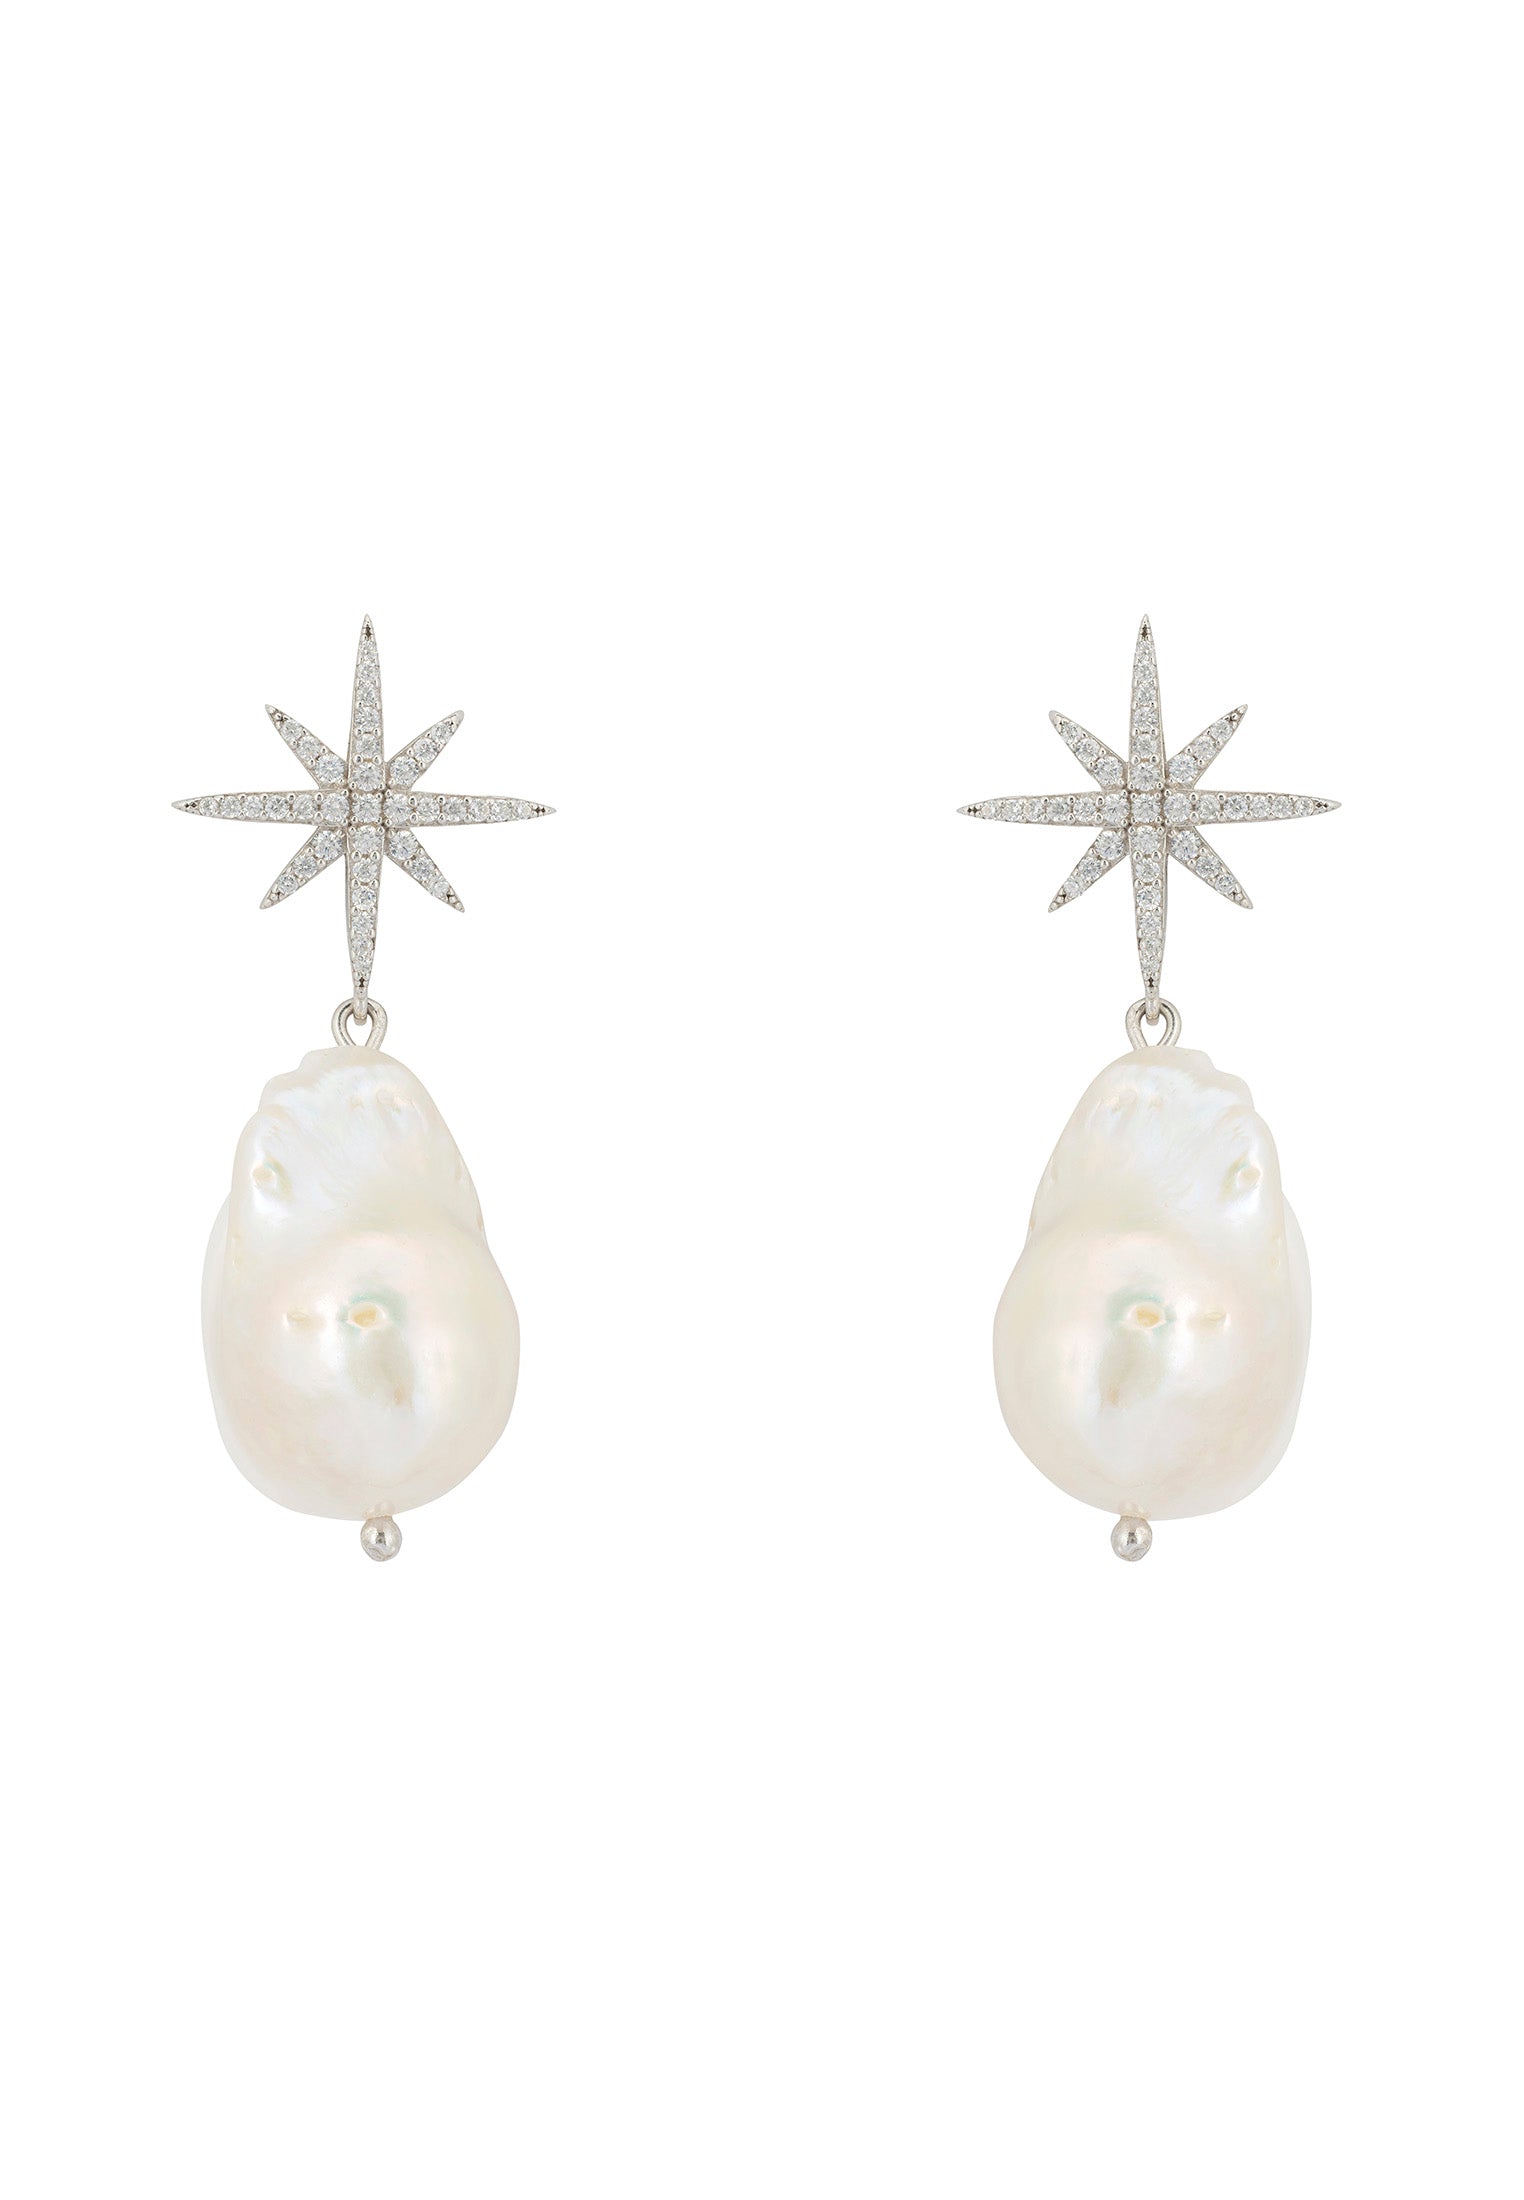 Pendientes colgantes con forma de estrella y perlas barrocas en plata